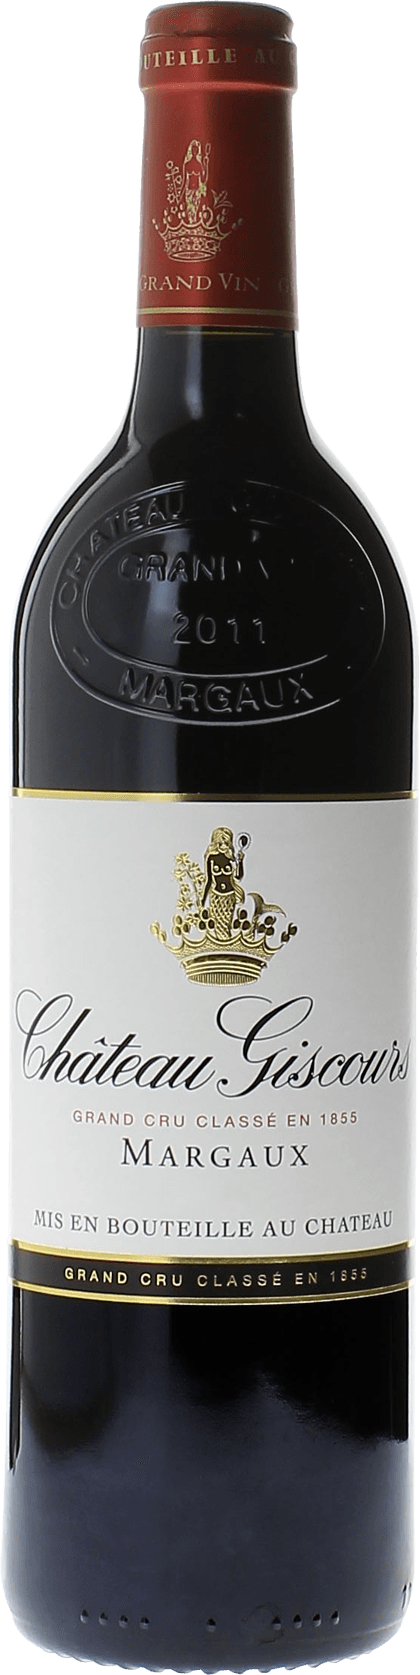 Giscours 2012 3me Grand cru class Margaux, Bordeaux rouge